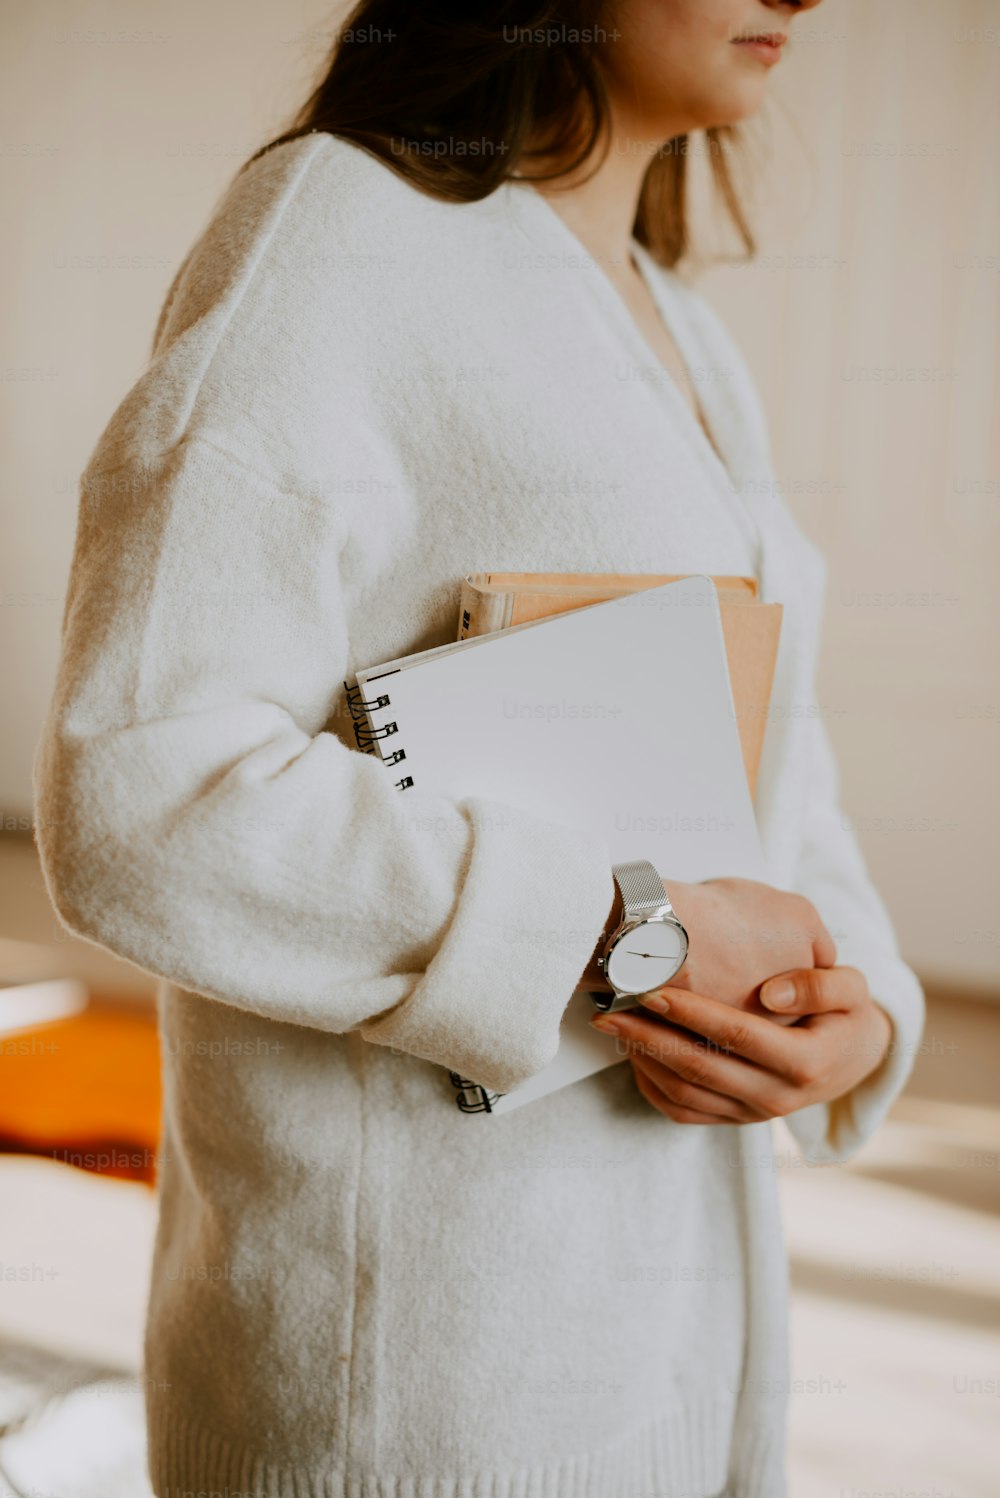 Una mujer con un suéter blanco sosteniendo un cuaderno y un reloj